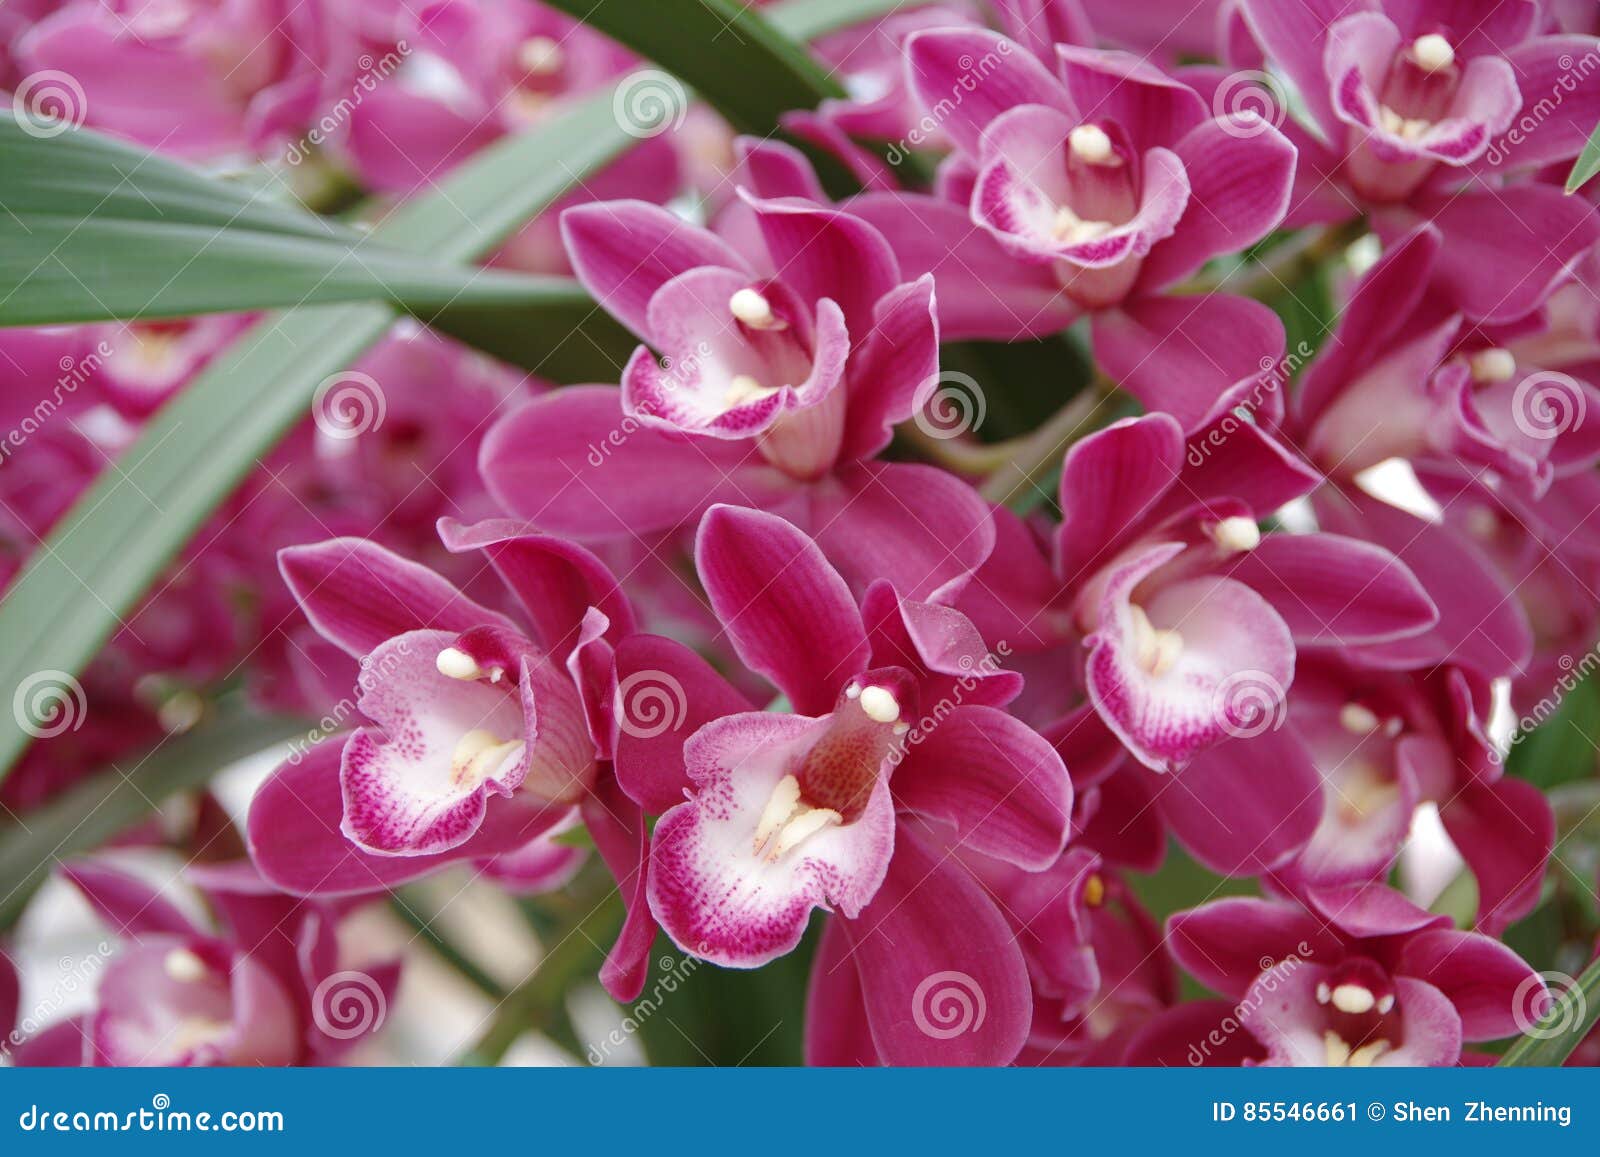 Orquídea magenta imagem de stock. Imagem de floral, flor - 85546661